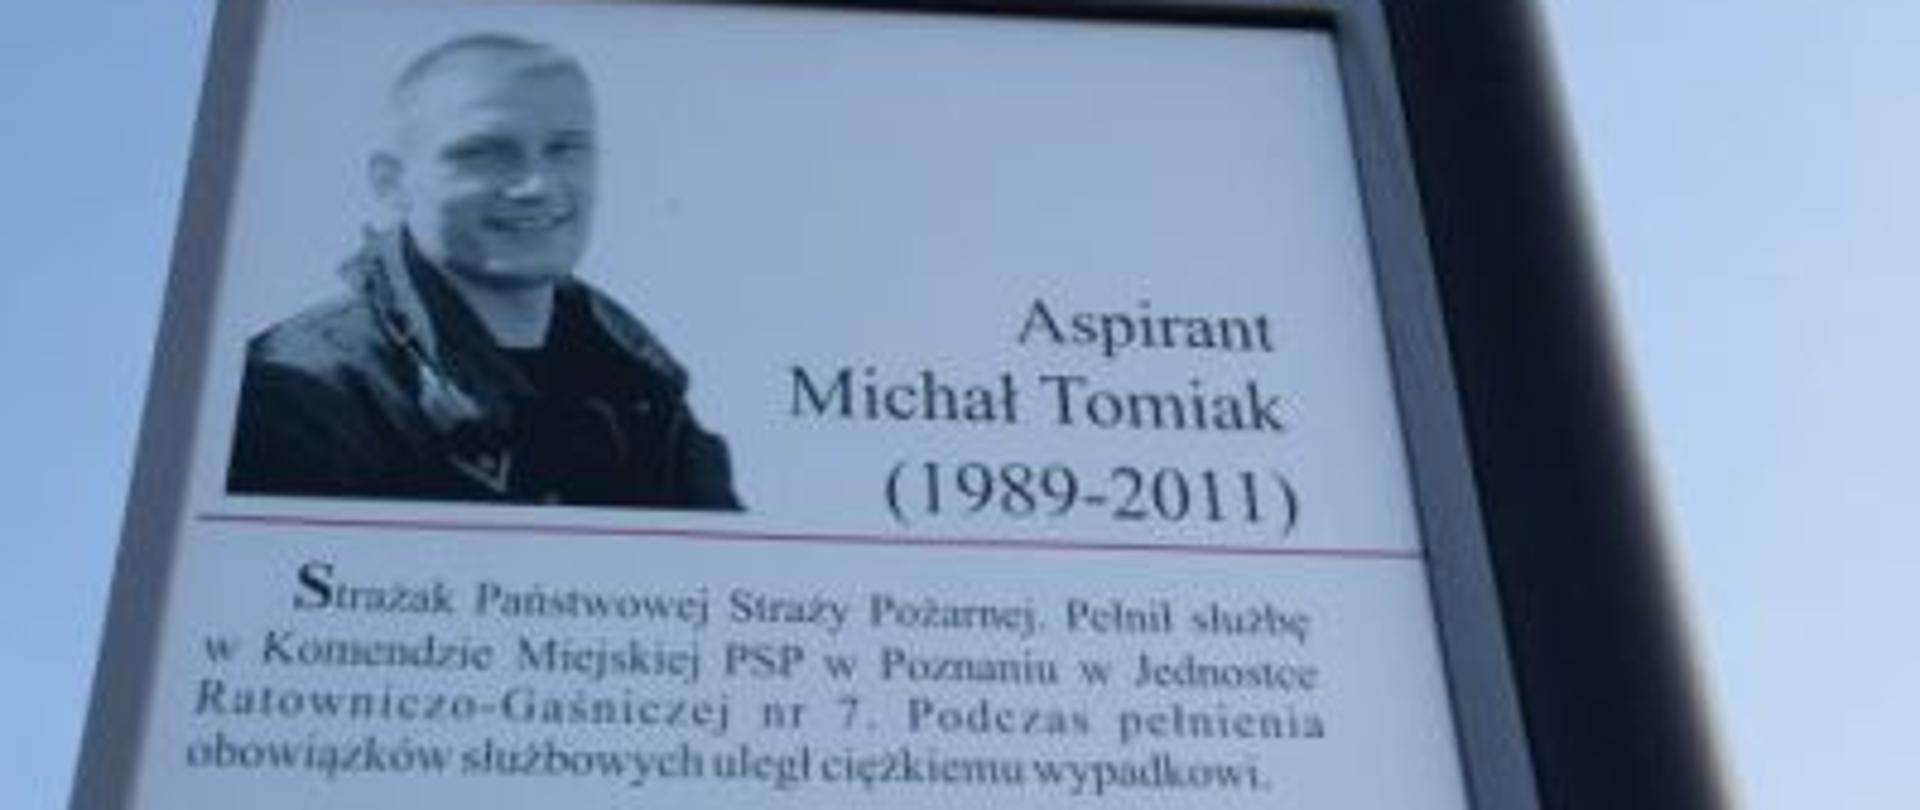 Metalowy słupek zamontowany przy ulicy, na którym widnieje tablica ze zdjęciem i wpisem upamiętniającym Michała Tomiaka